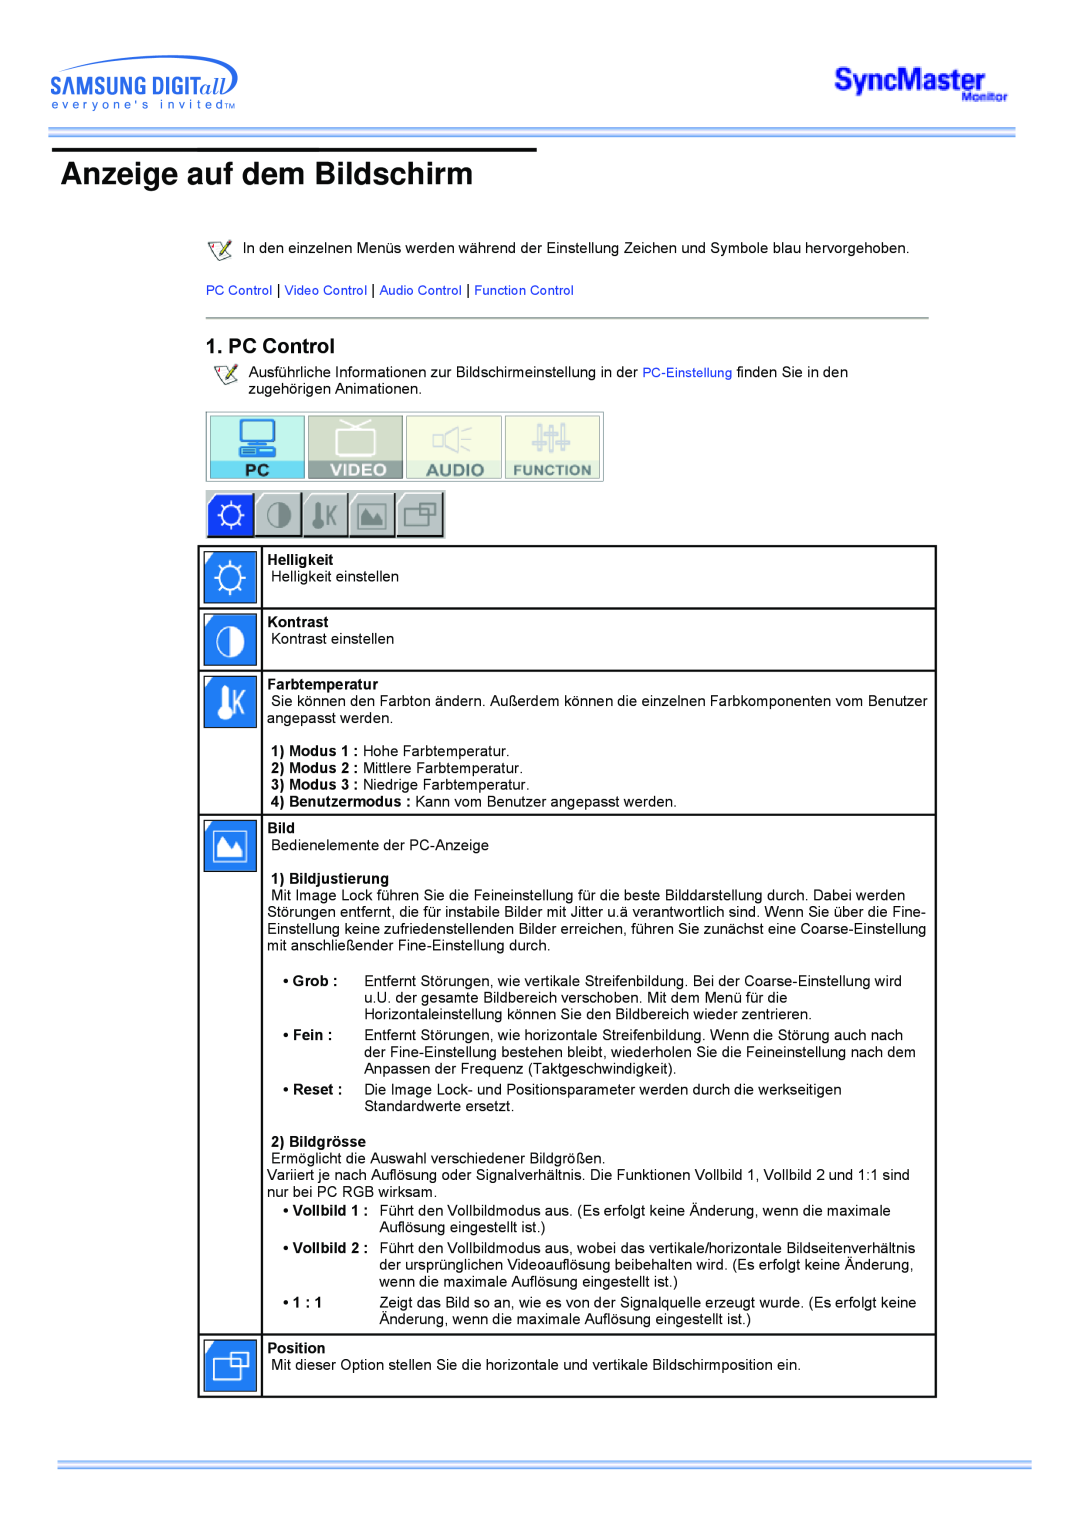 Samsung CK32PSNS/EDC manual Anzeige auf dem Bildschirm, PC Control, Helligkeit, Kontrast, Farbtemperatur, Bildjustierung 